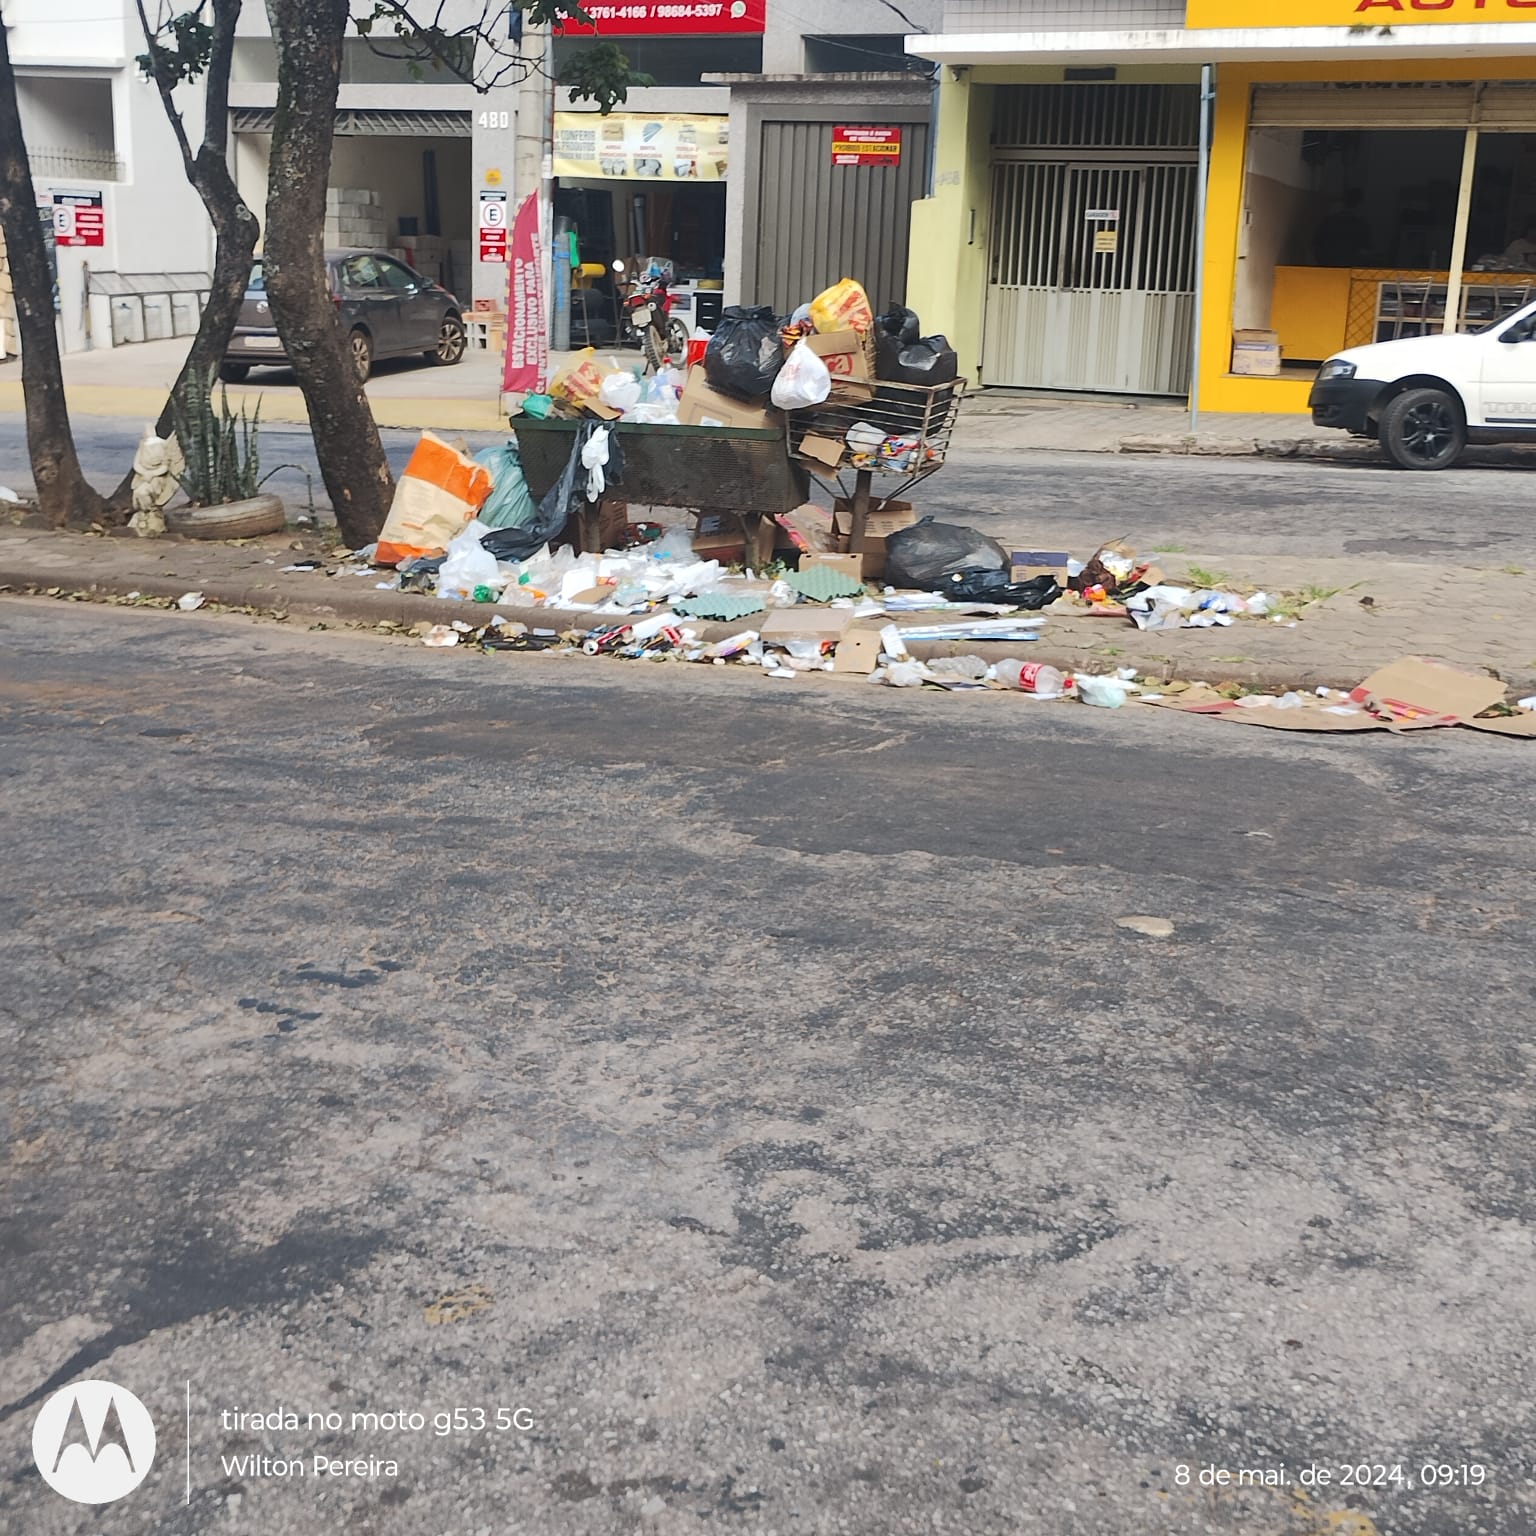 CIDADE TOMADA PELO LIXO: vídeo flagra motorista dirigindo caminhão e recolhendo lixo; vereadores defendem fim do contrato com empresa de coleta